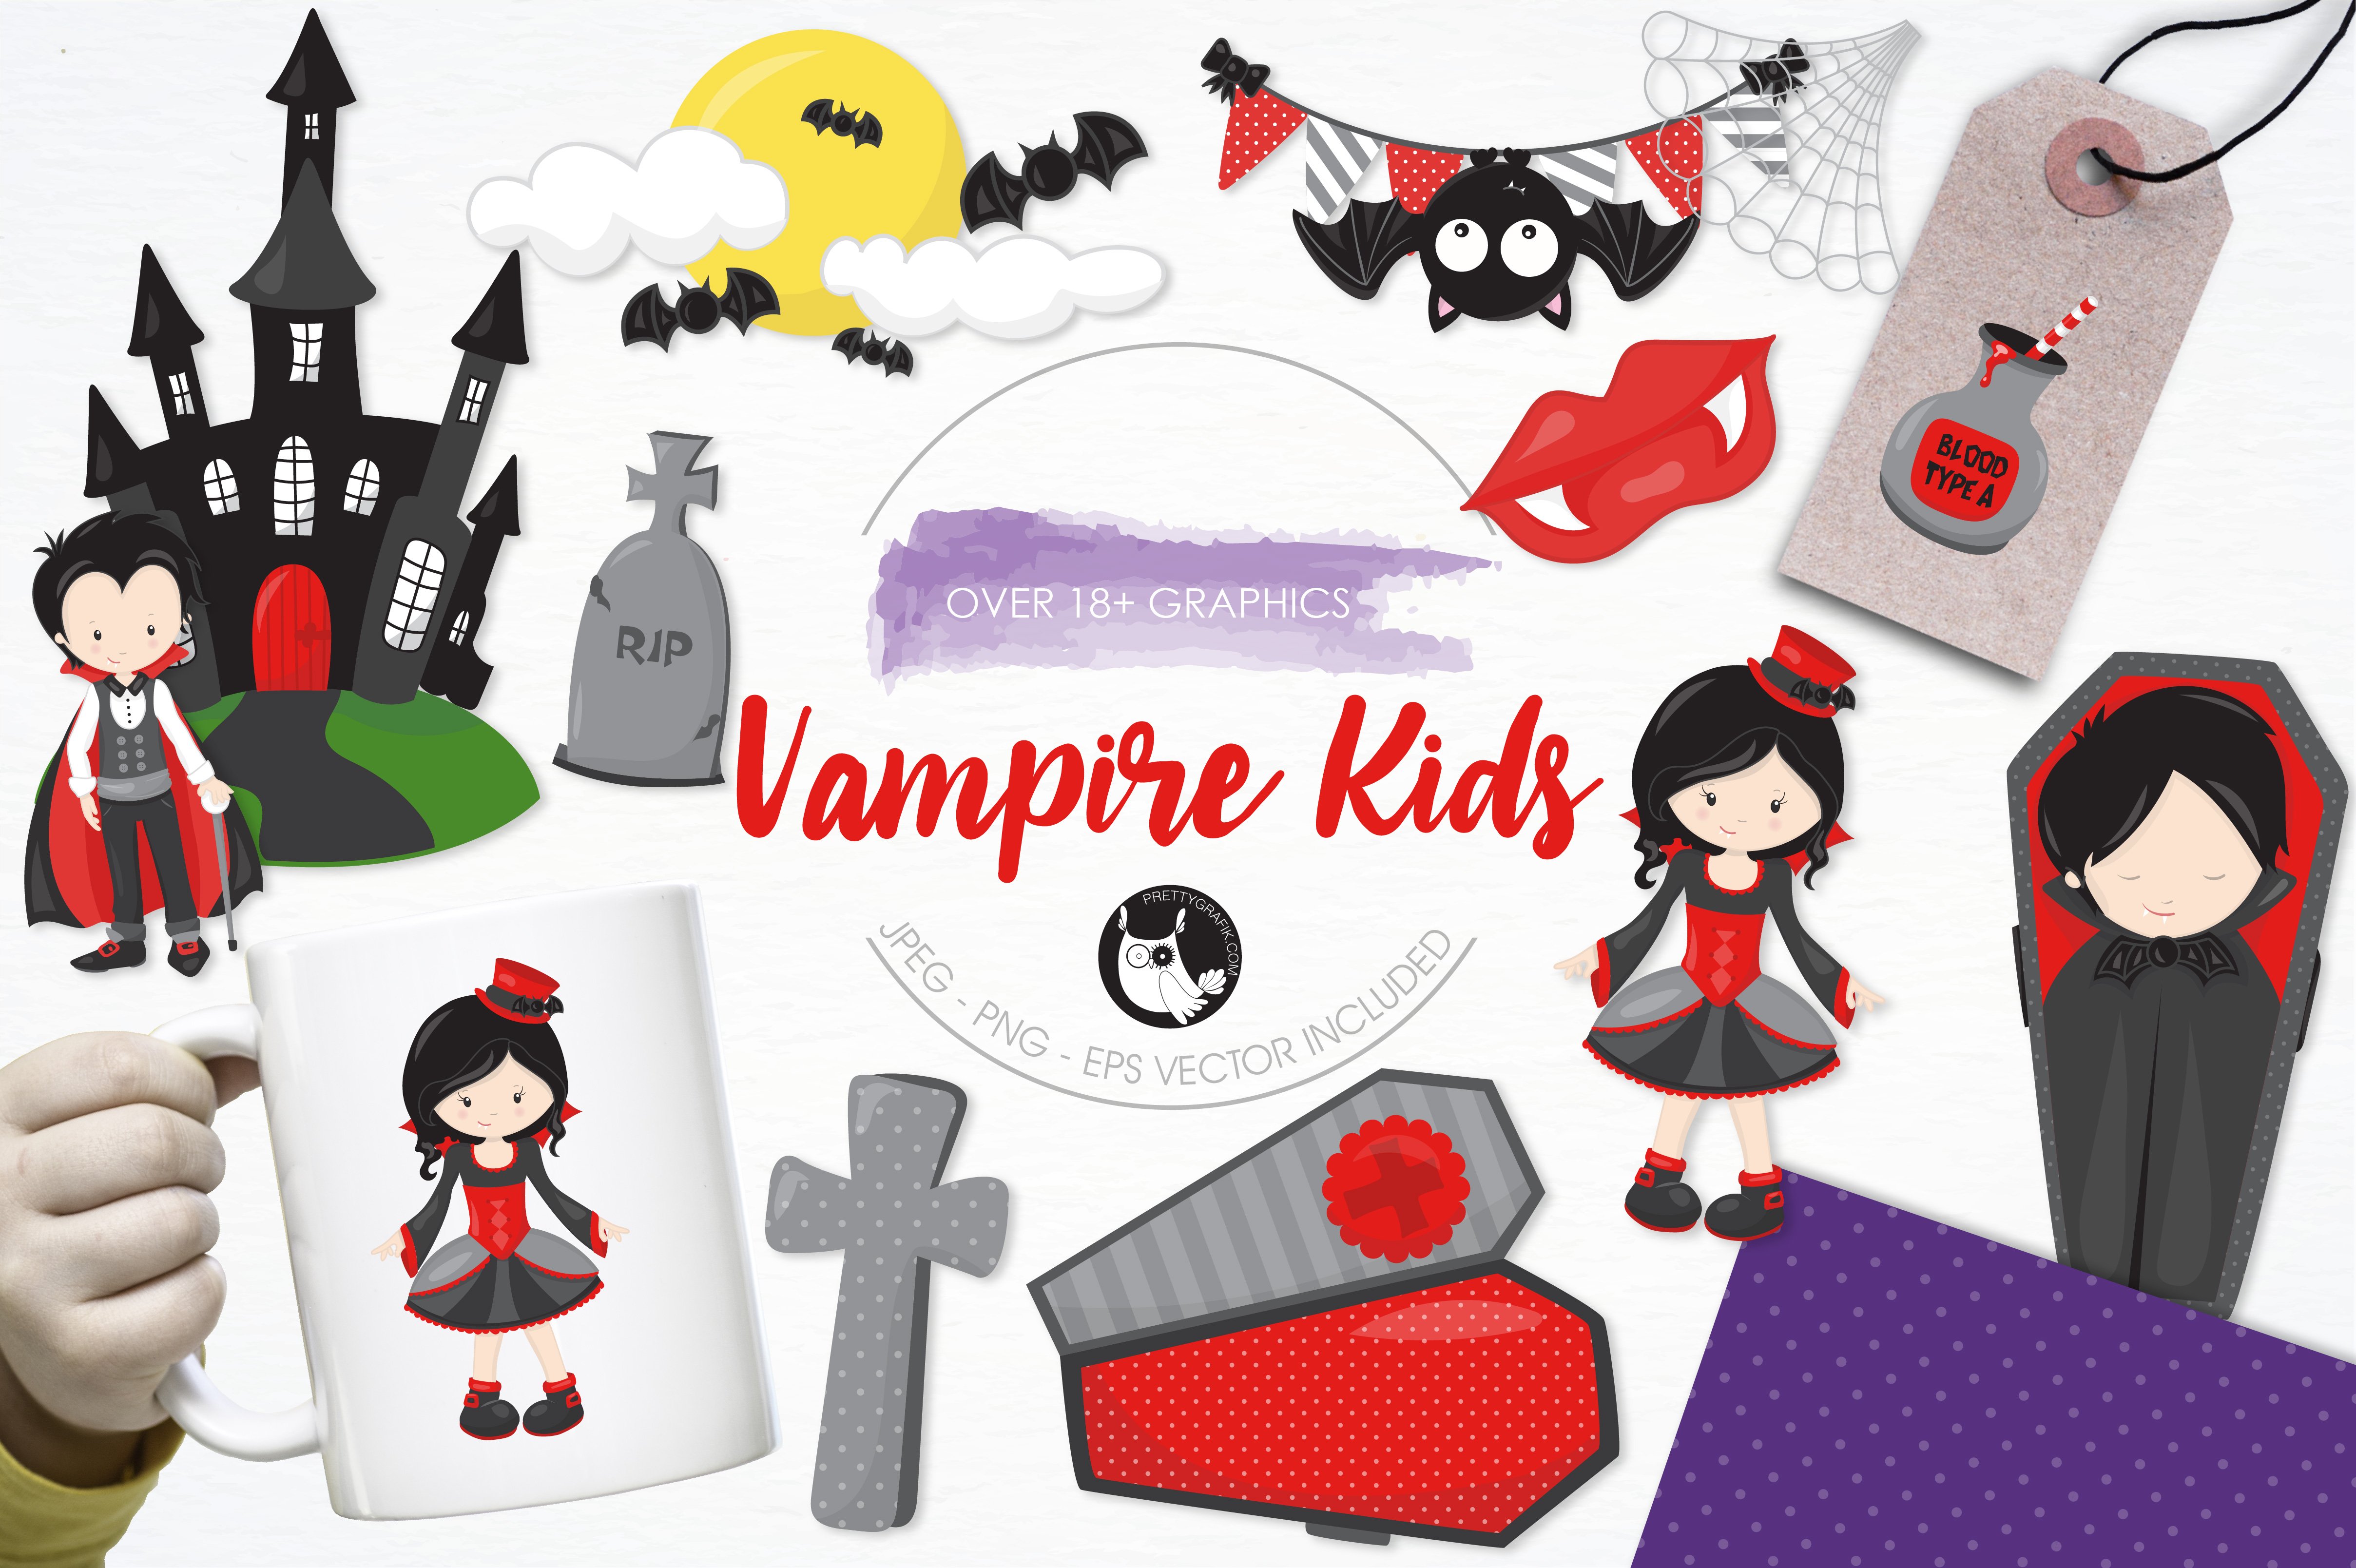 Vampire Kids Illustration Pack - Vector Image